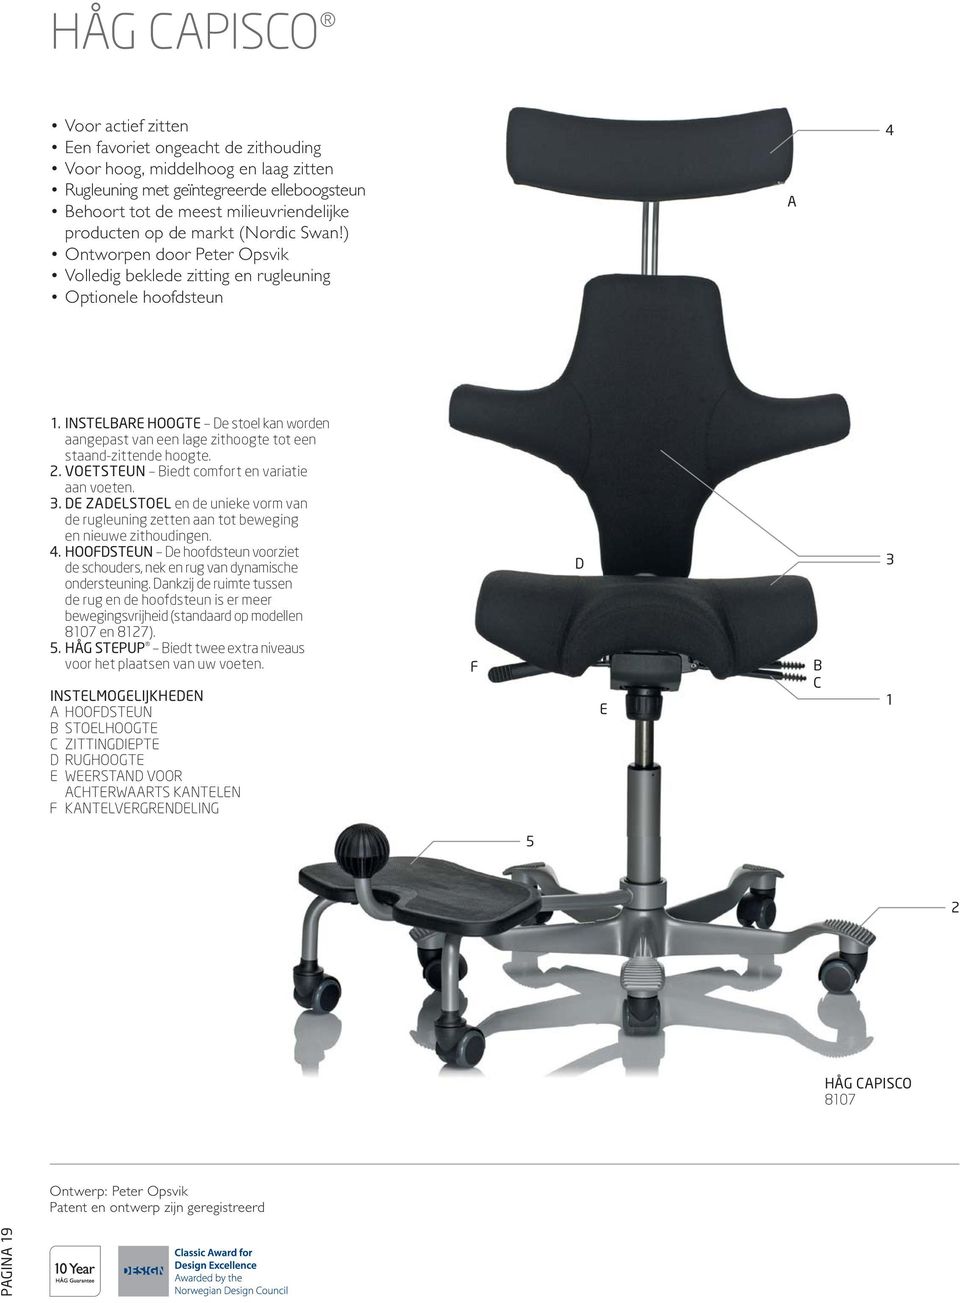 INSTELBARE HOOGTE De stoel kan worden aangepast van een lage zithoogte tot een staand-zittende hoogte. 2. VOETSTEUN Biedt comfort en variatie aan voeten. 3.